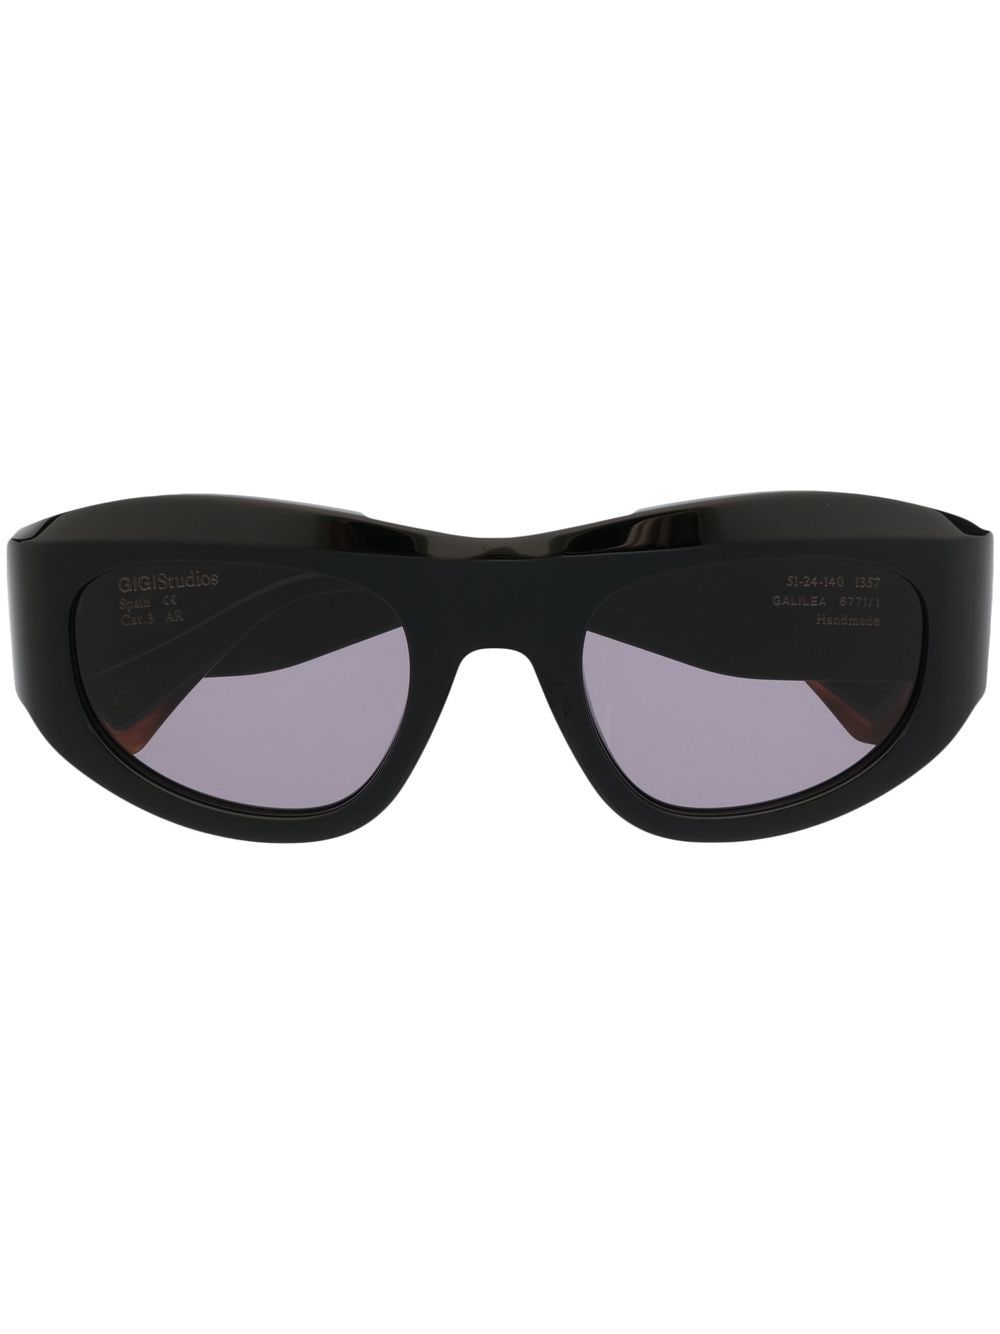 GIGI STUDIOS tinted lenses sculpted sunglasses - Black von GIGI STUDIOS